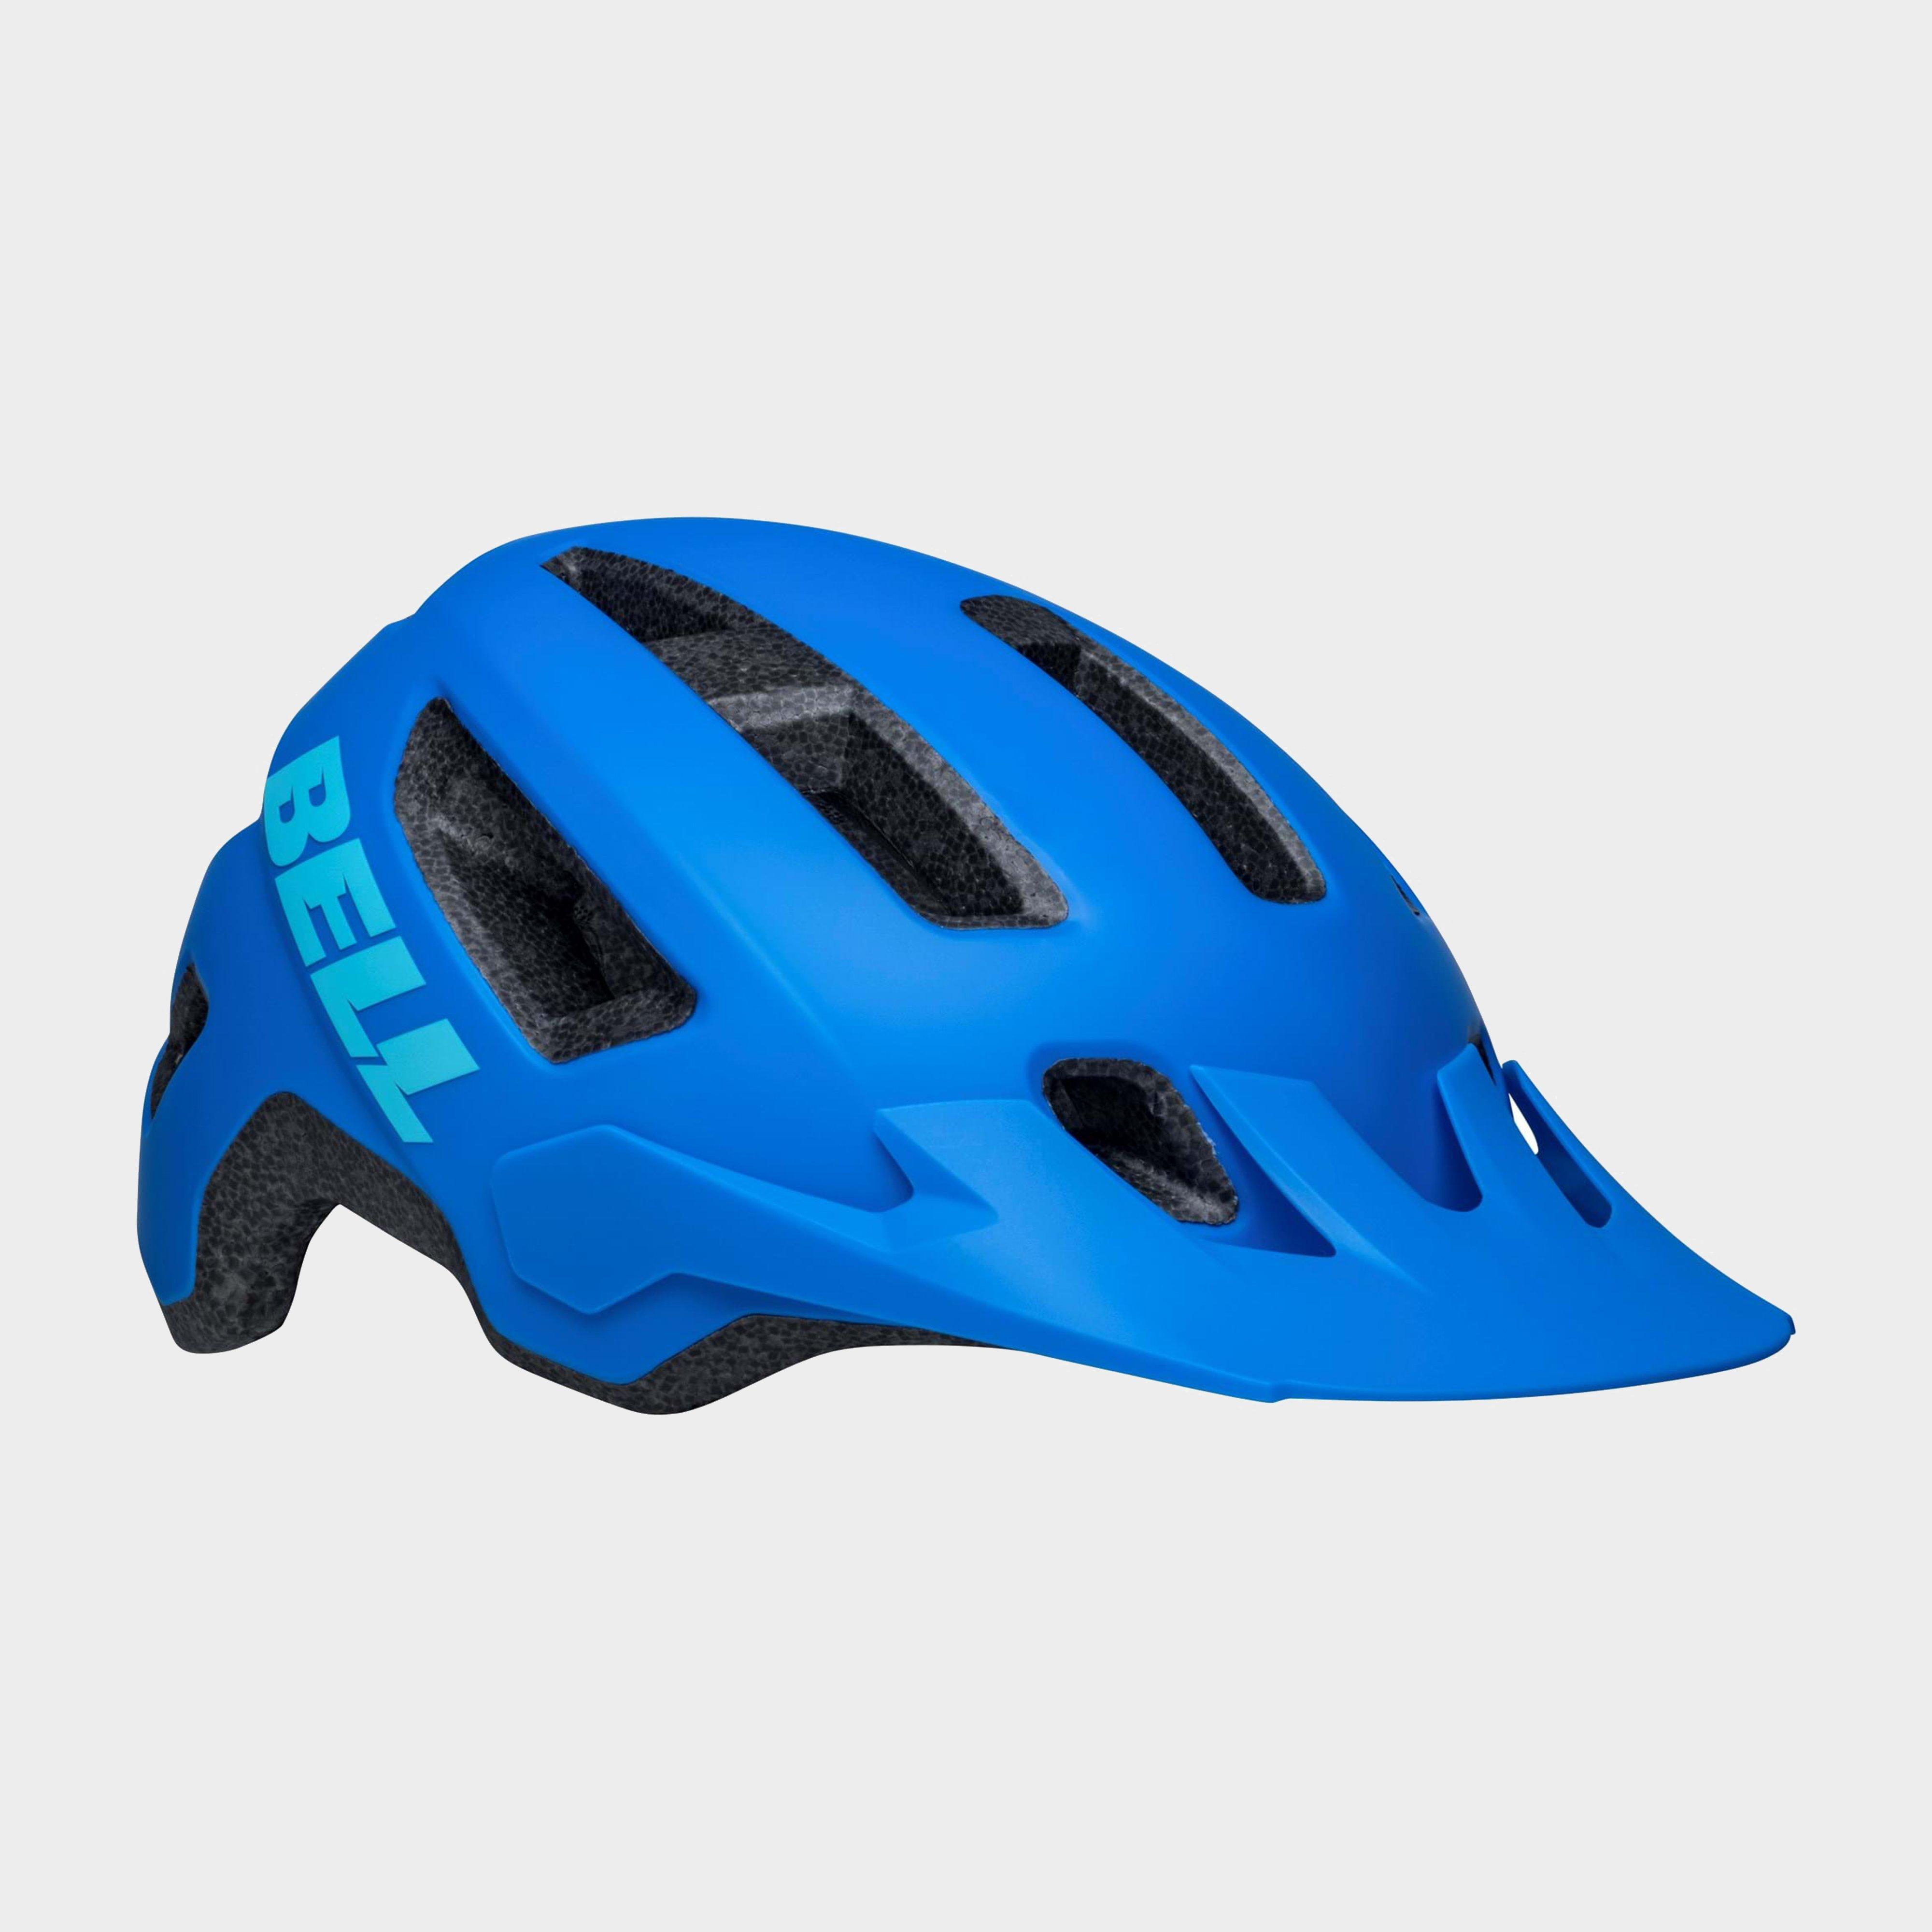  Bell Nomad 2 MTB Helmet in Matte Dark Blue, Blue